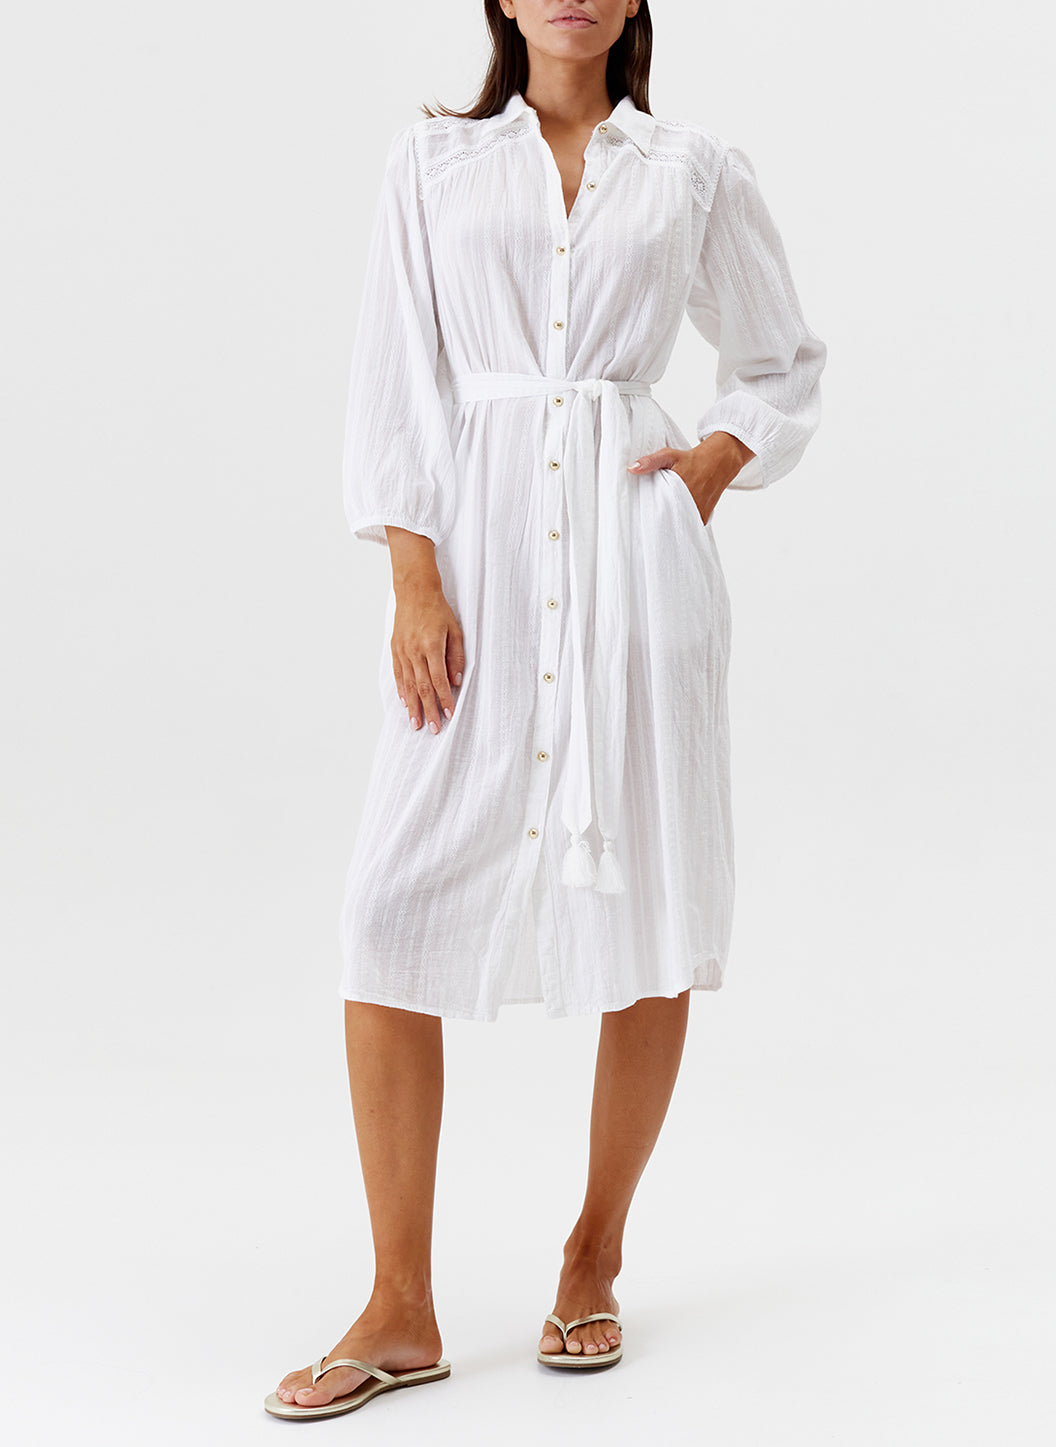 Cressida White Belted Shirt Dress | Melissa Odabash US